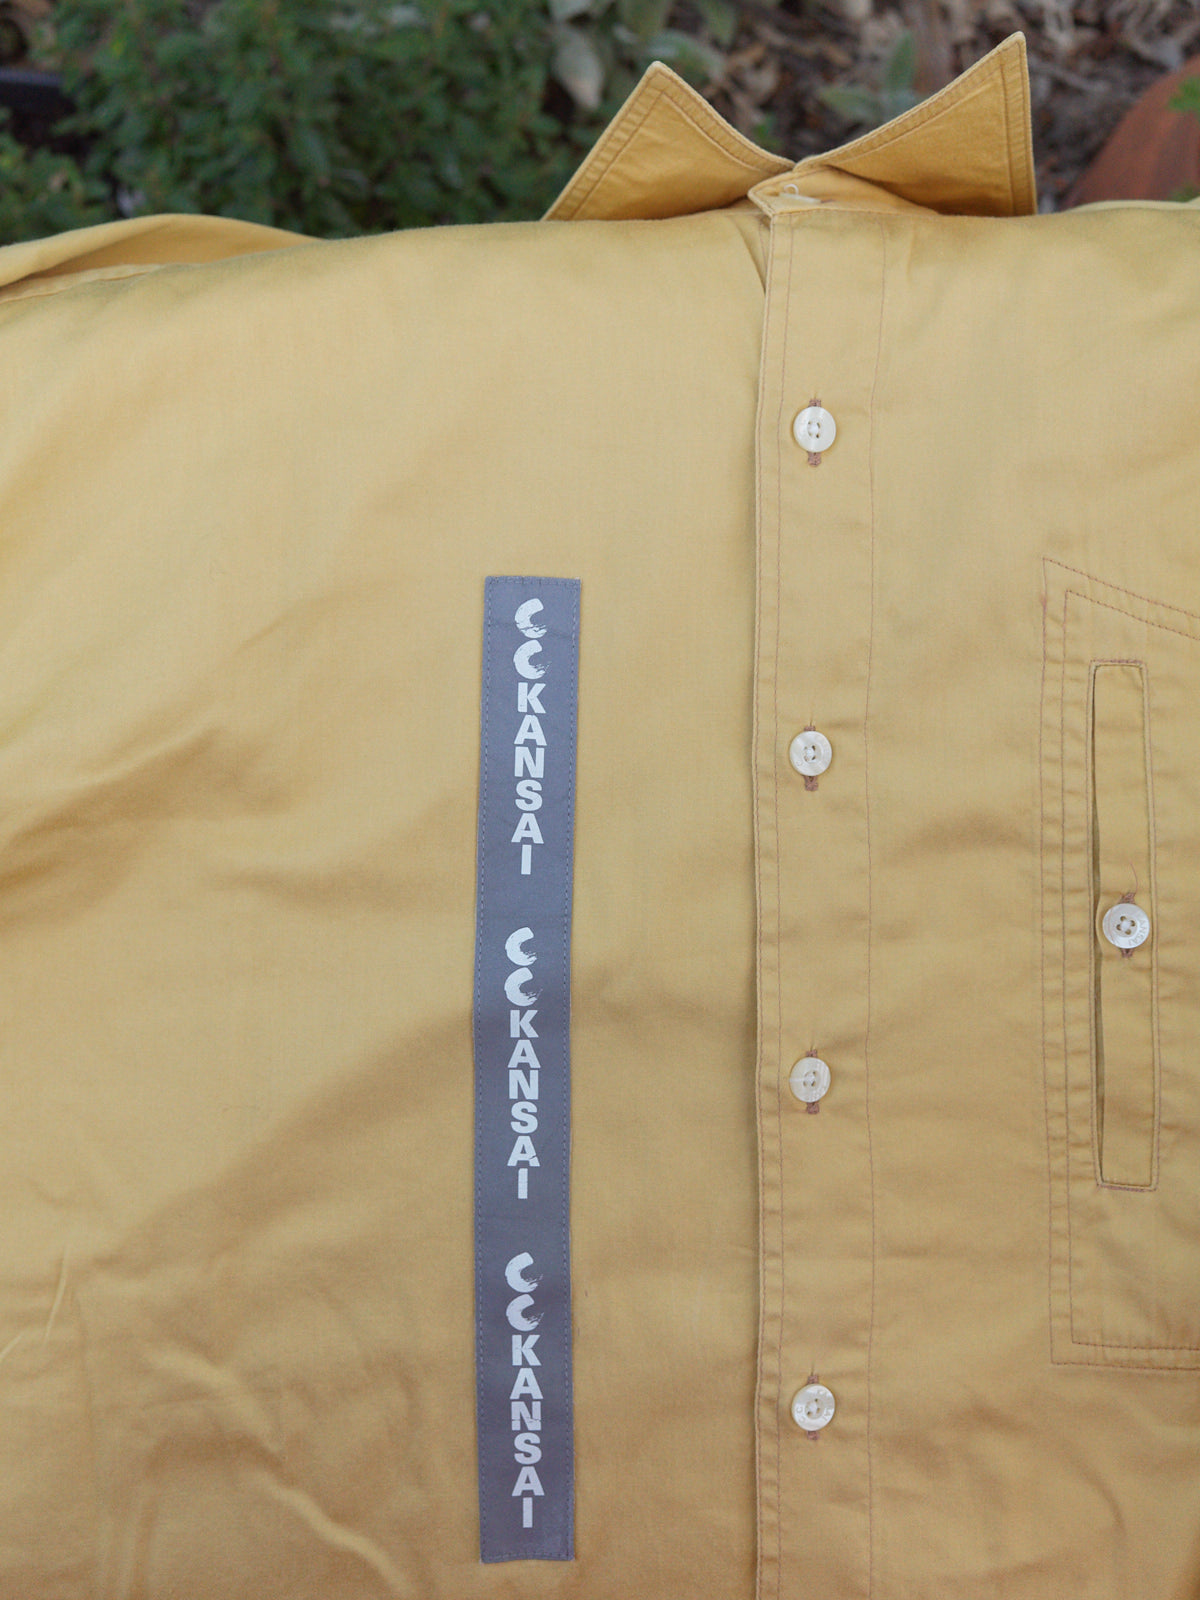 CC Kansai Yamamoto 1990s yellow cotton logo reflector patch shirt - mens M S